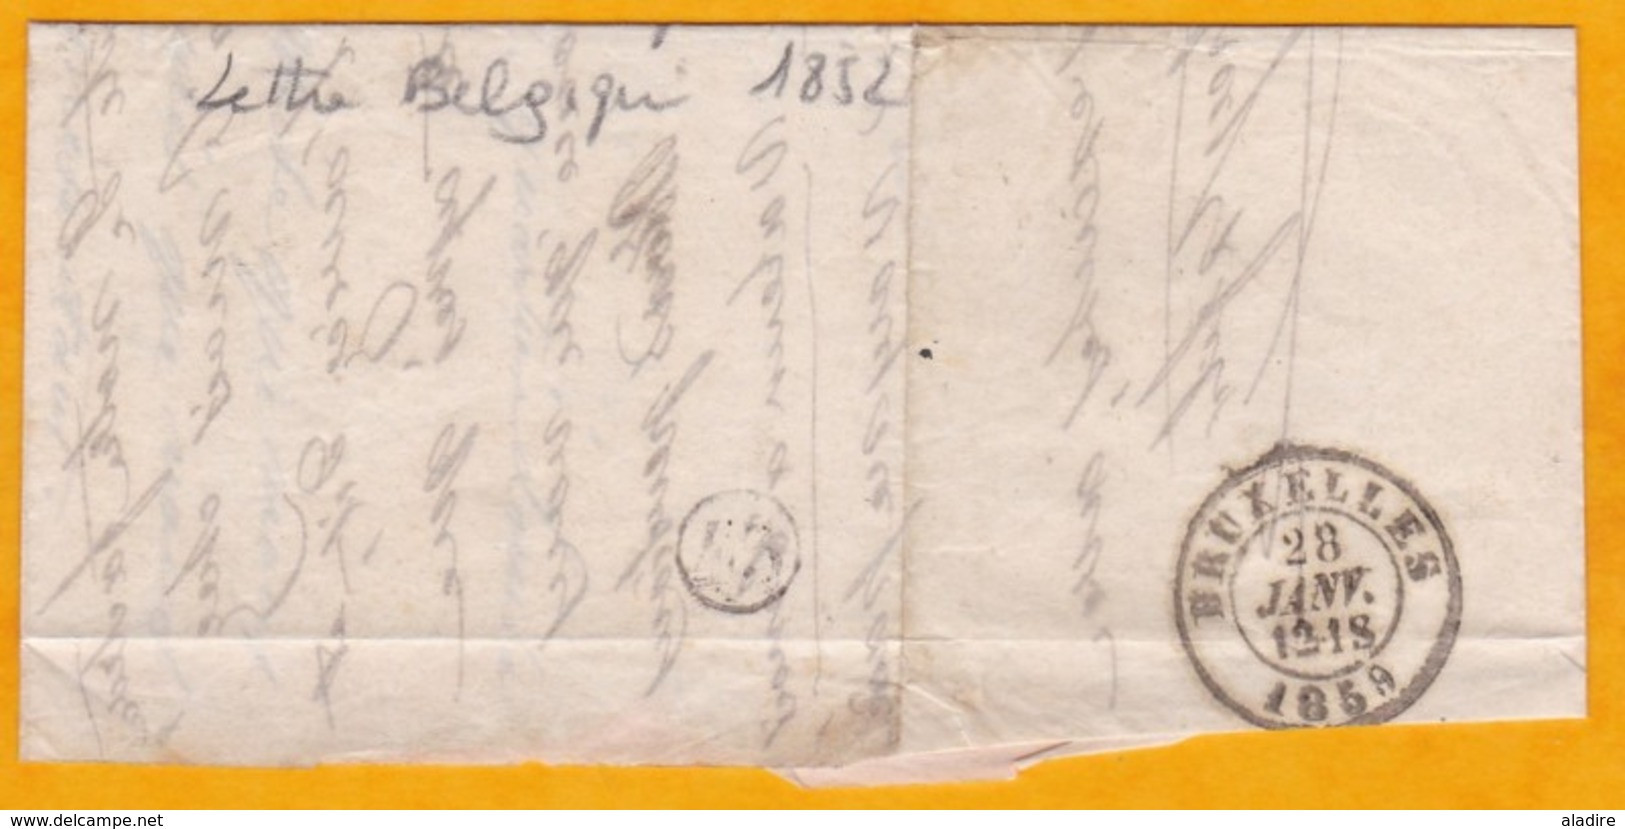 1859 -  Portion De Lettre écrite à Beaune, France Pour Bruxelles ? ! - Timbre Et Oblitération Belges YT 10 Avec Voisins - 1858-1862 Medaillons (9/12)